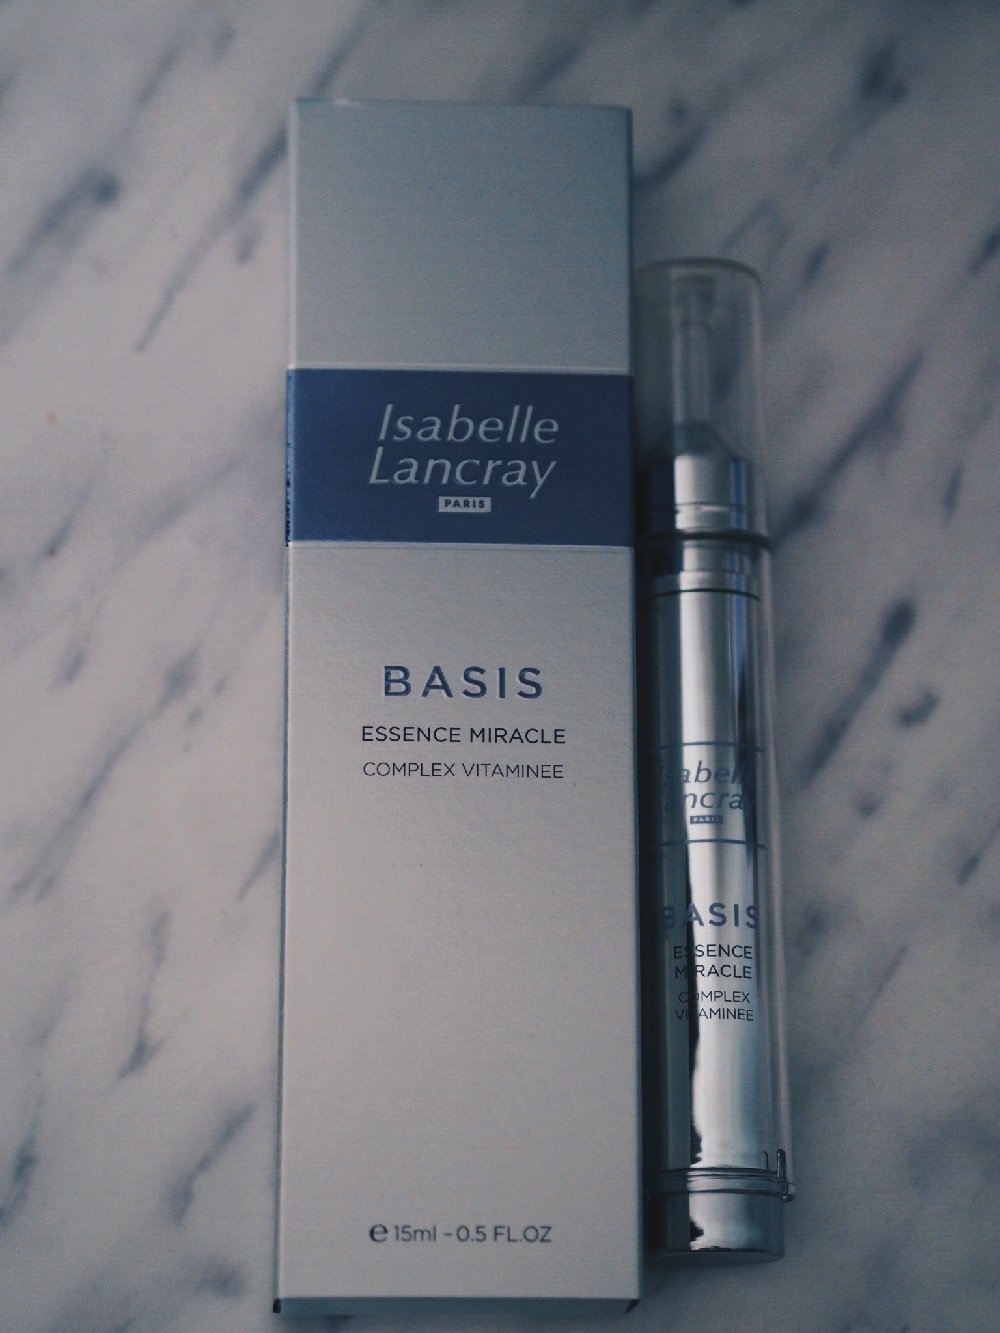 Heute stelle ich die luxuriöse Hautpflegelinie Egostyle von Isabelle Lancray näher auf meinem Blog vor